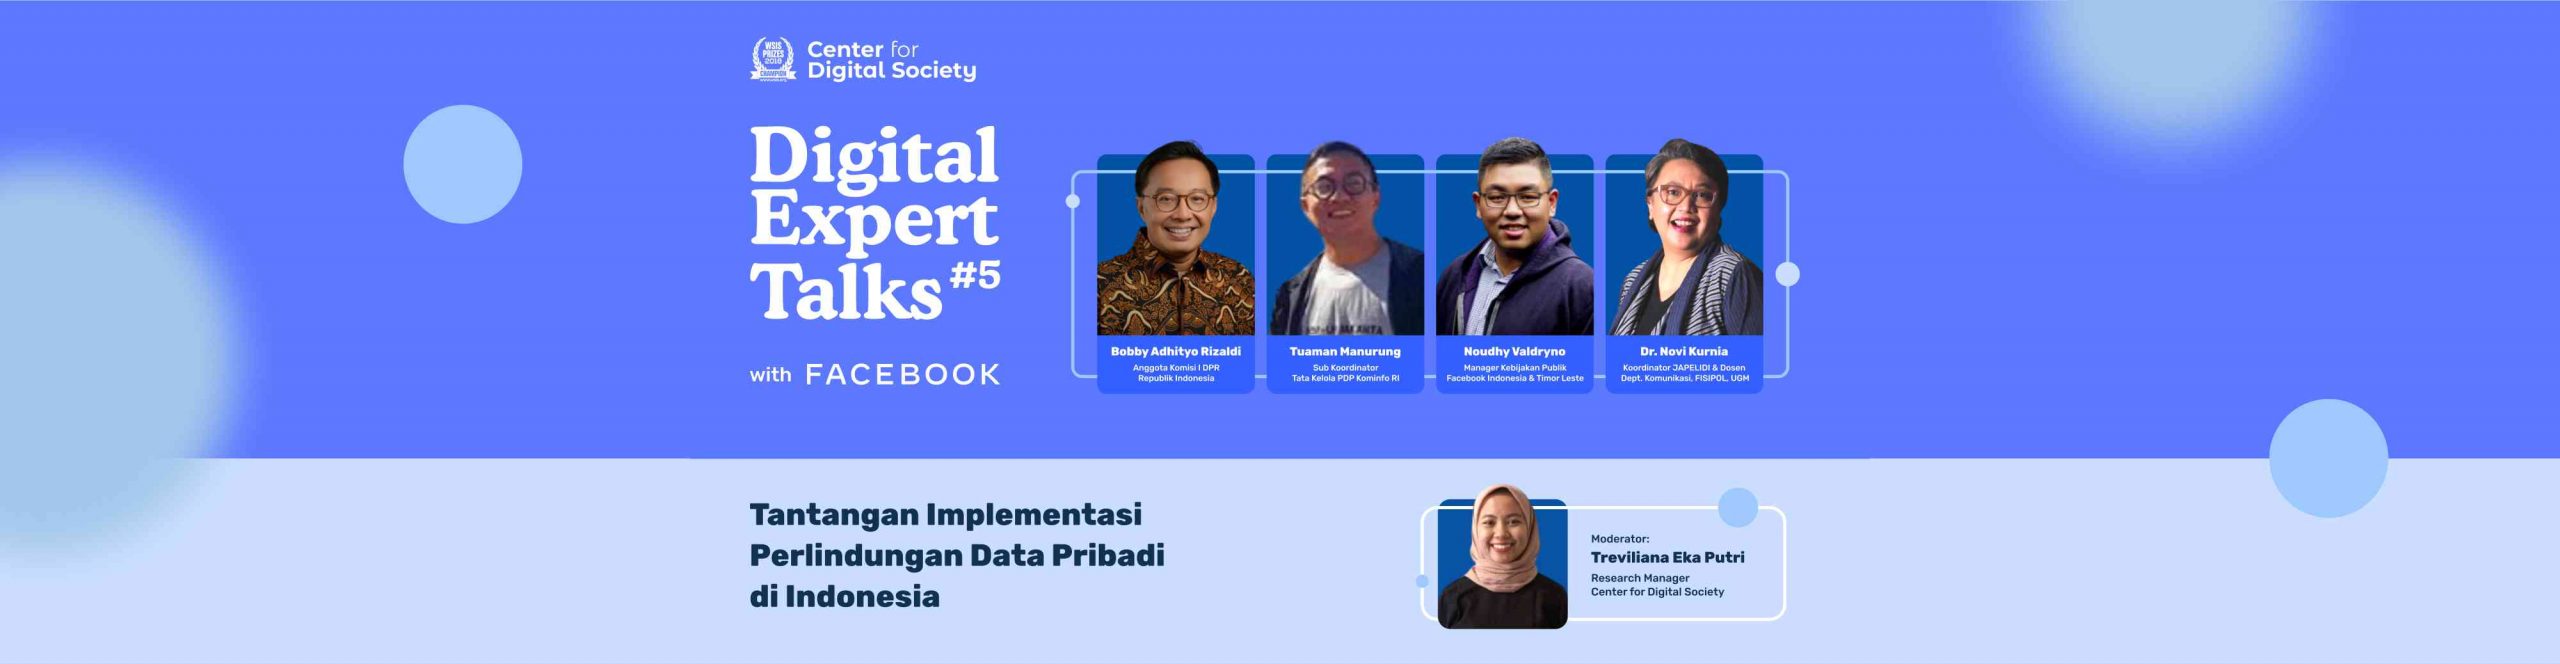 [SIARAN PERS] Tantangan Implementasi Perlindungan Data Pribadi di Indonesia | Digital Expert Talks #5 with Meta